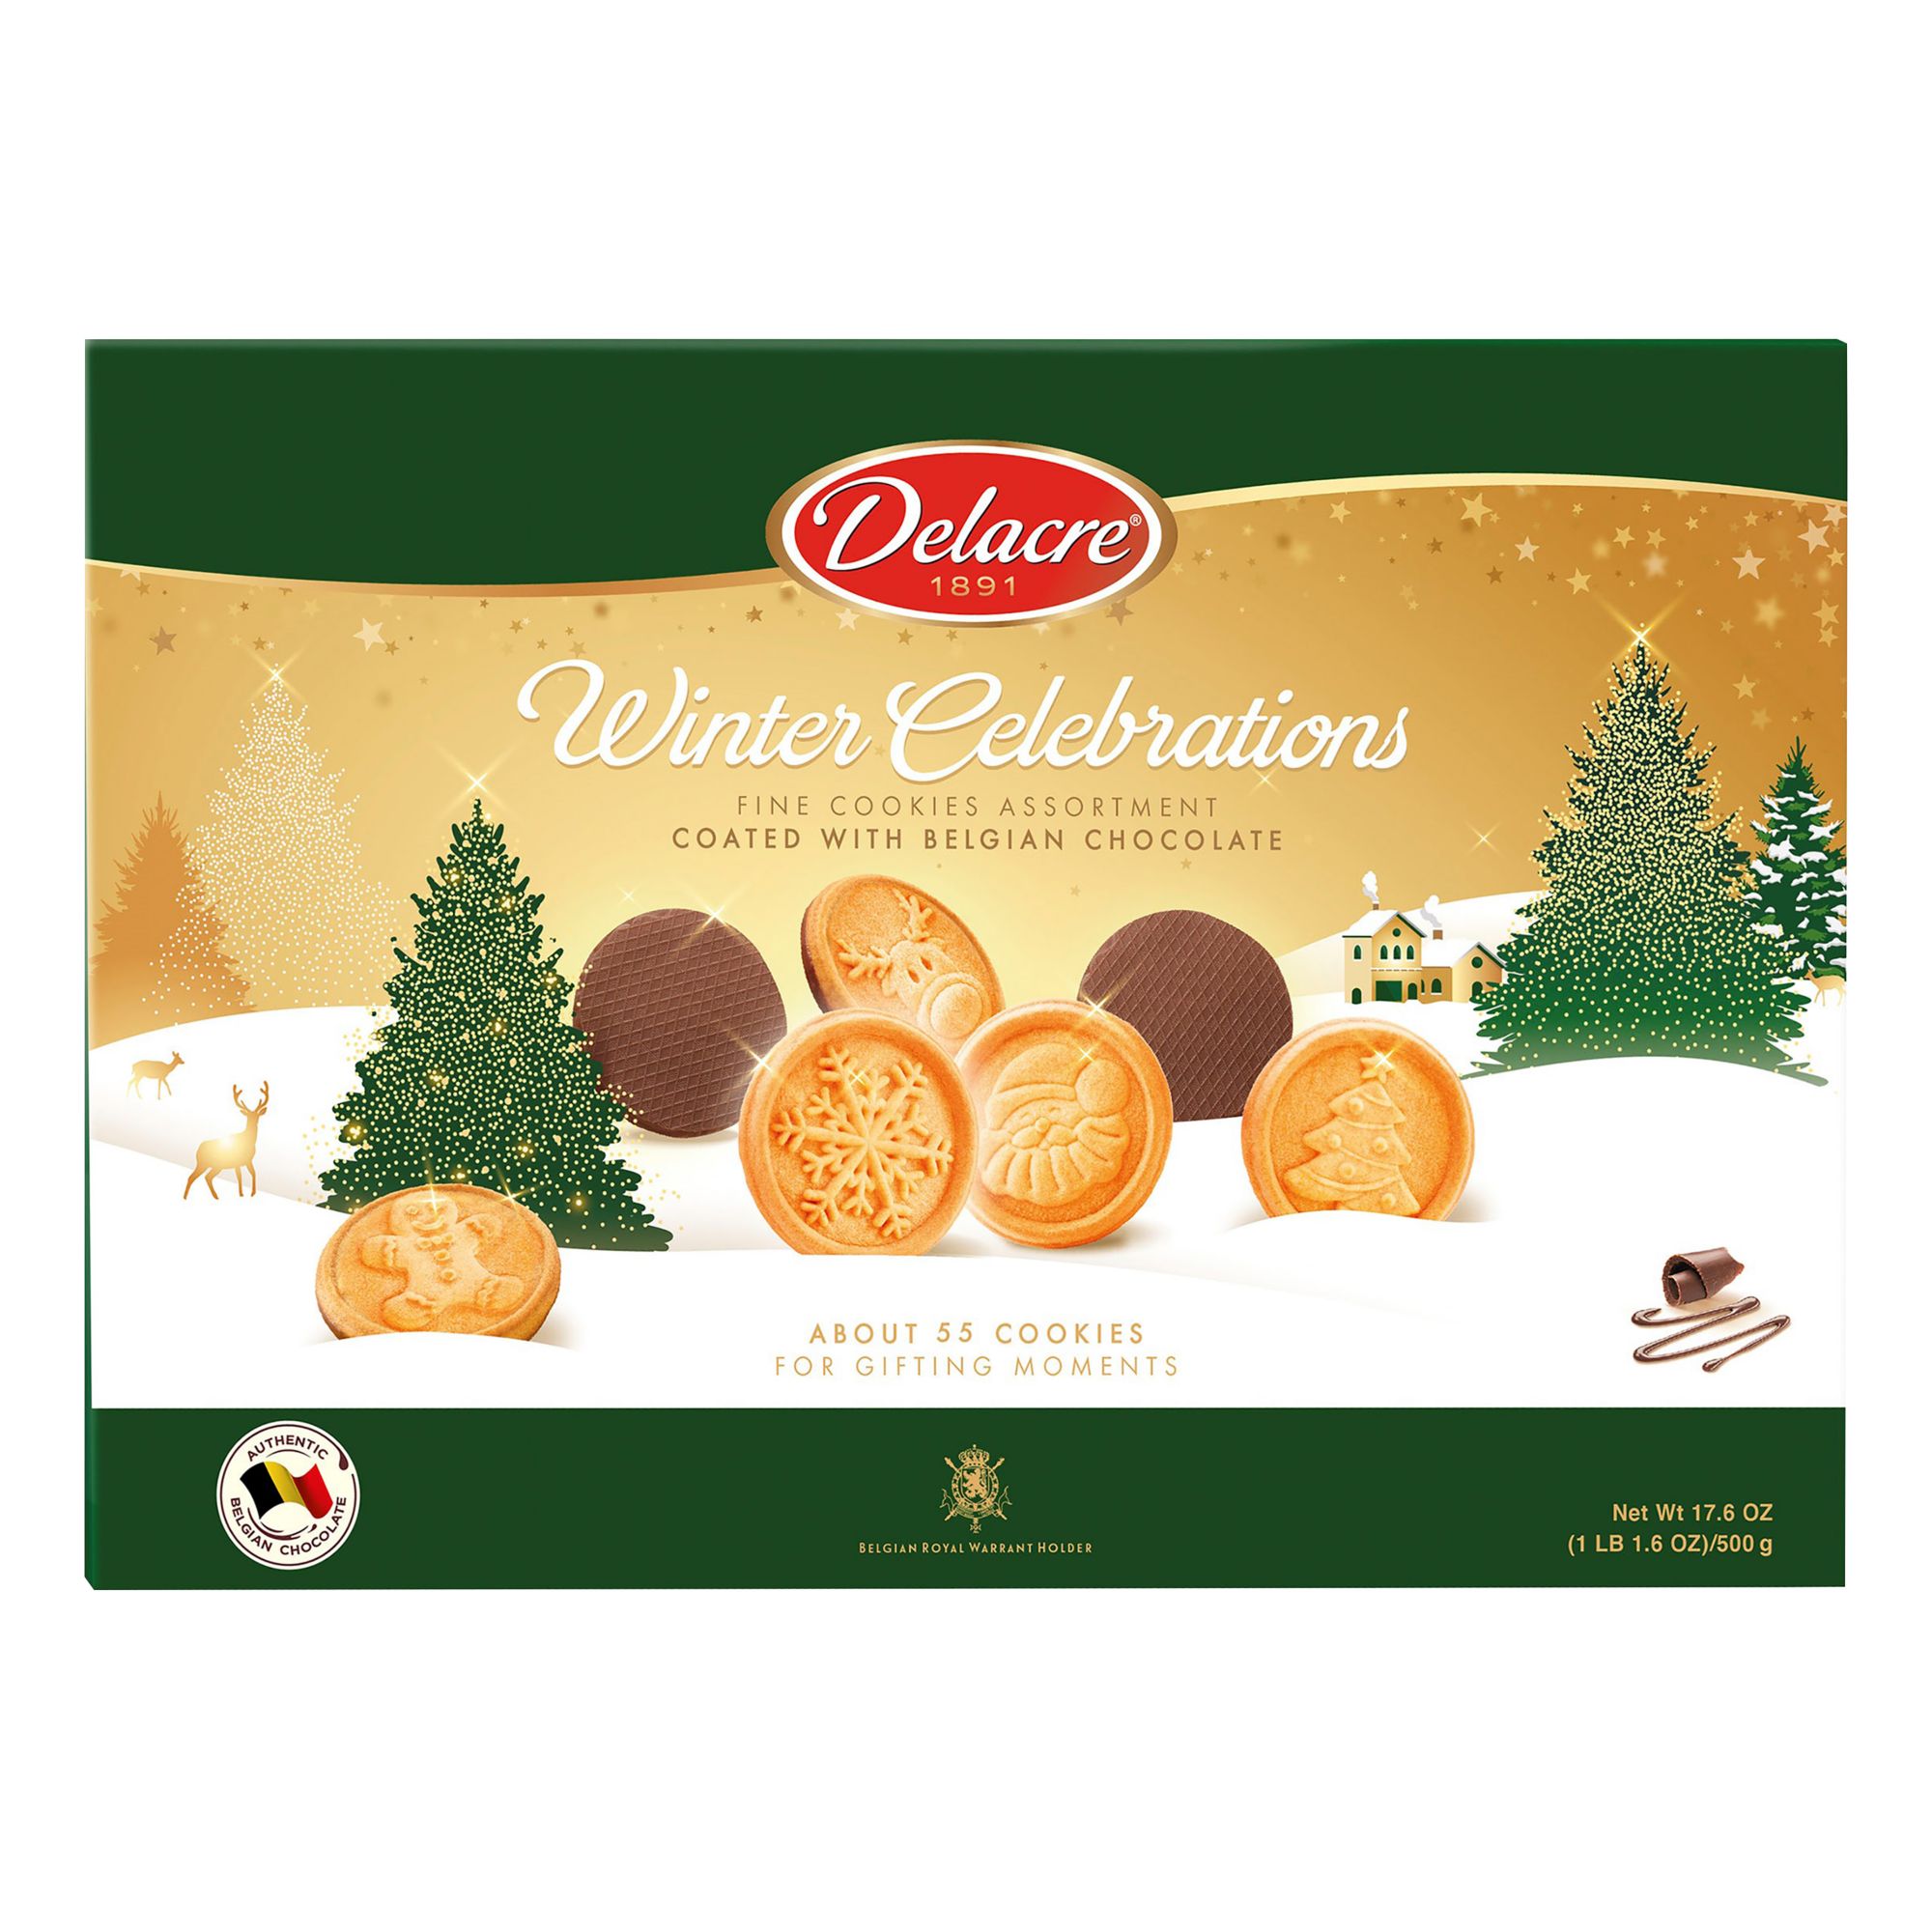 Buy Delacre Biscuits Matadi 125 gr Online 